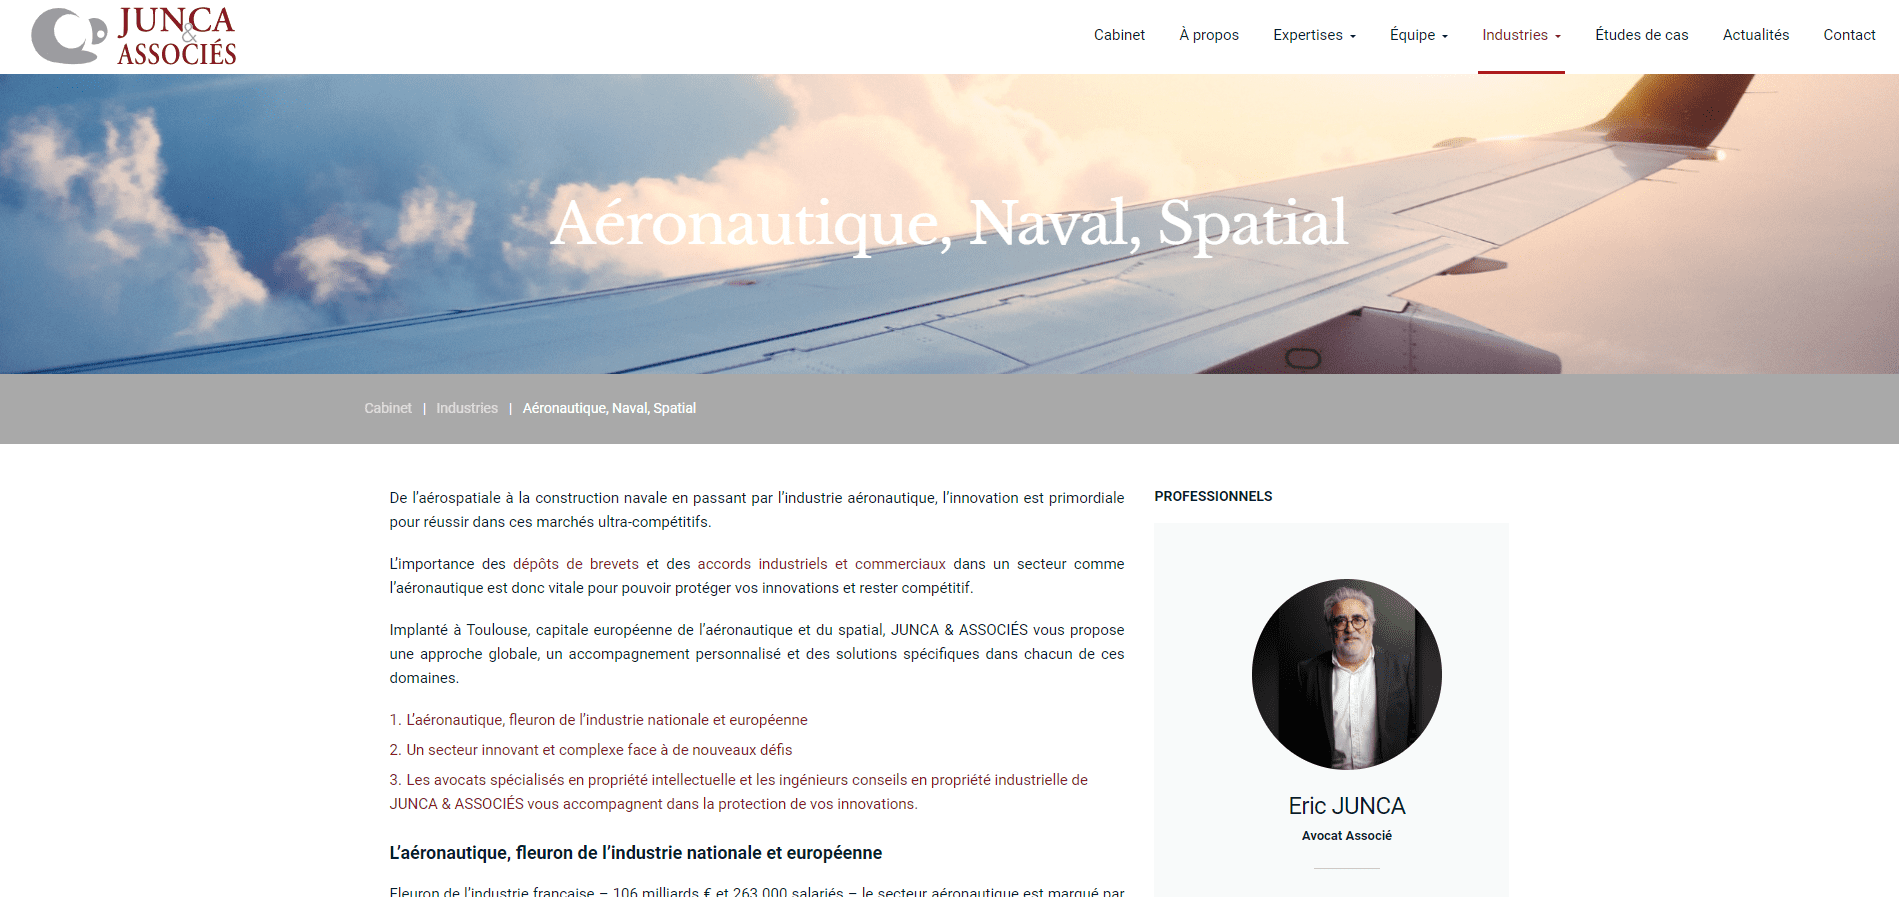 baccana-digital-consulting-projet-cabinet-junca-et-associes-service-aeronautique